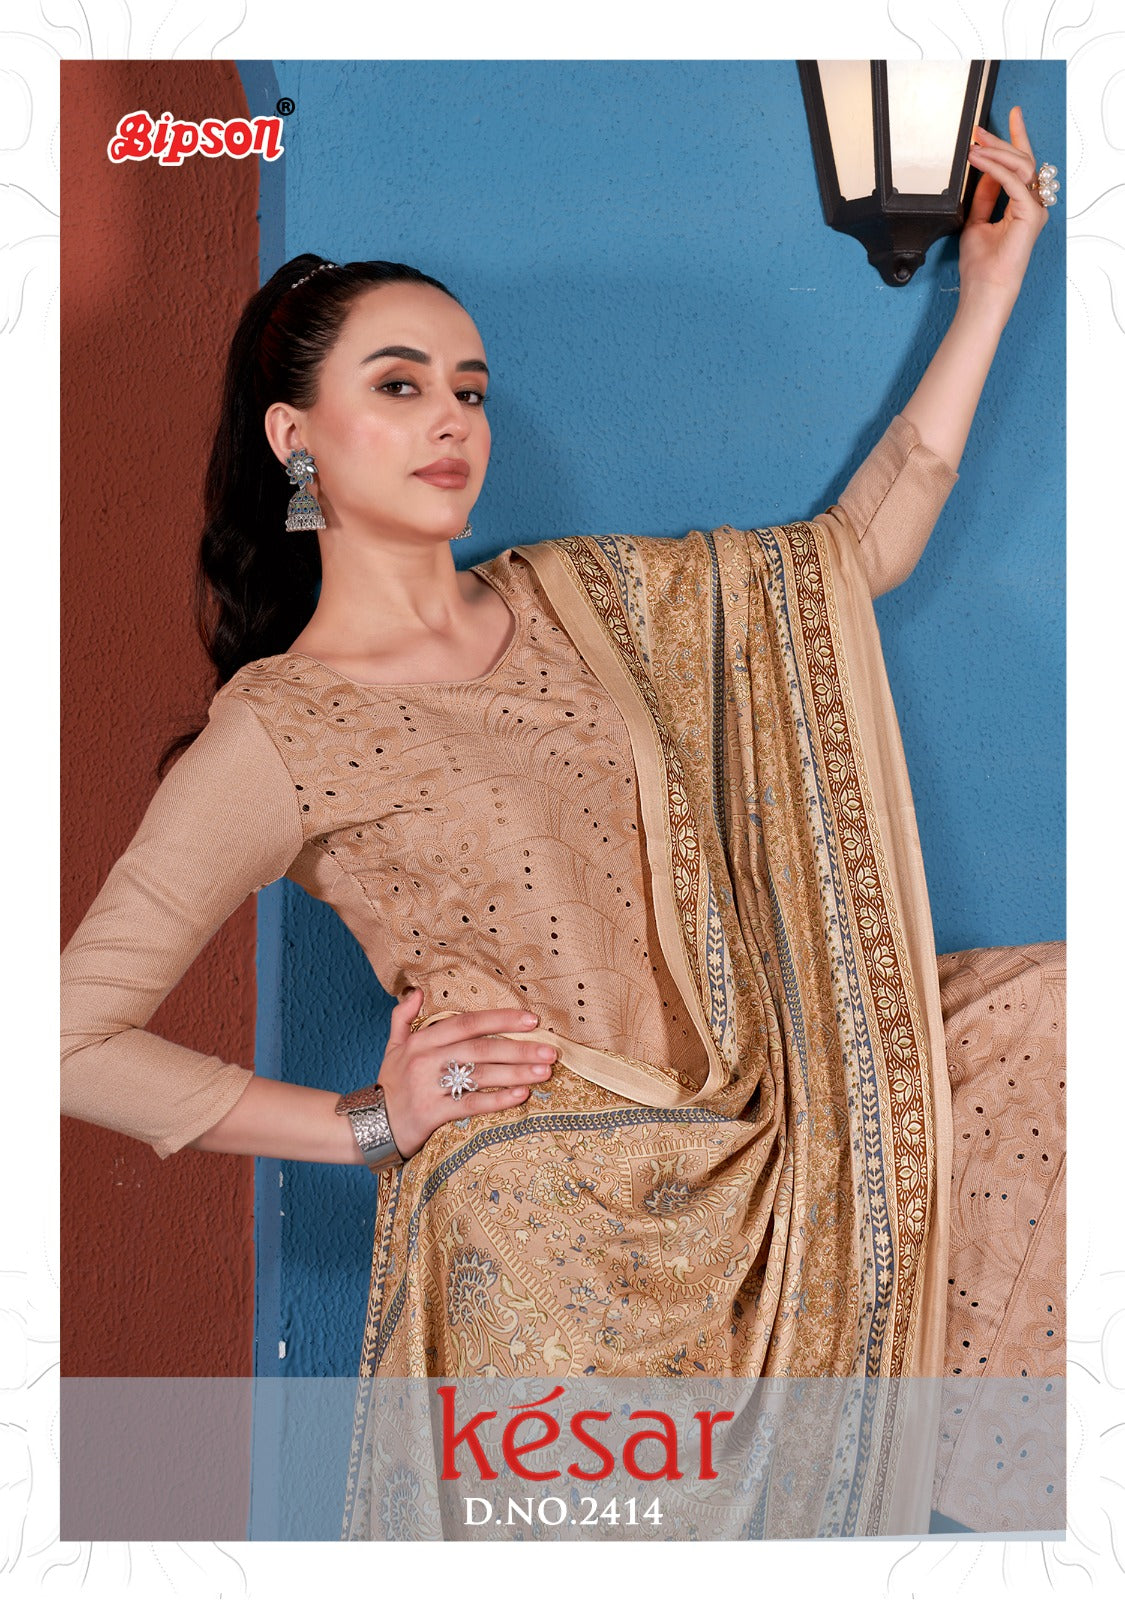 Vintage Collection » Kesar Rooh Velvet Blossom Salwar Suit Design 113-001  to 113-006 Series